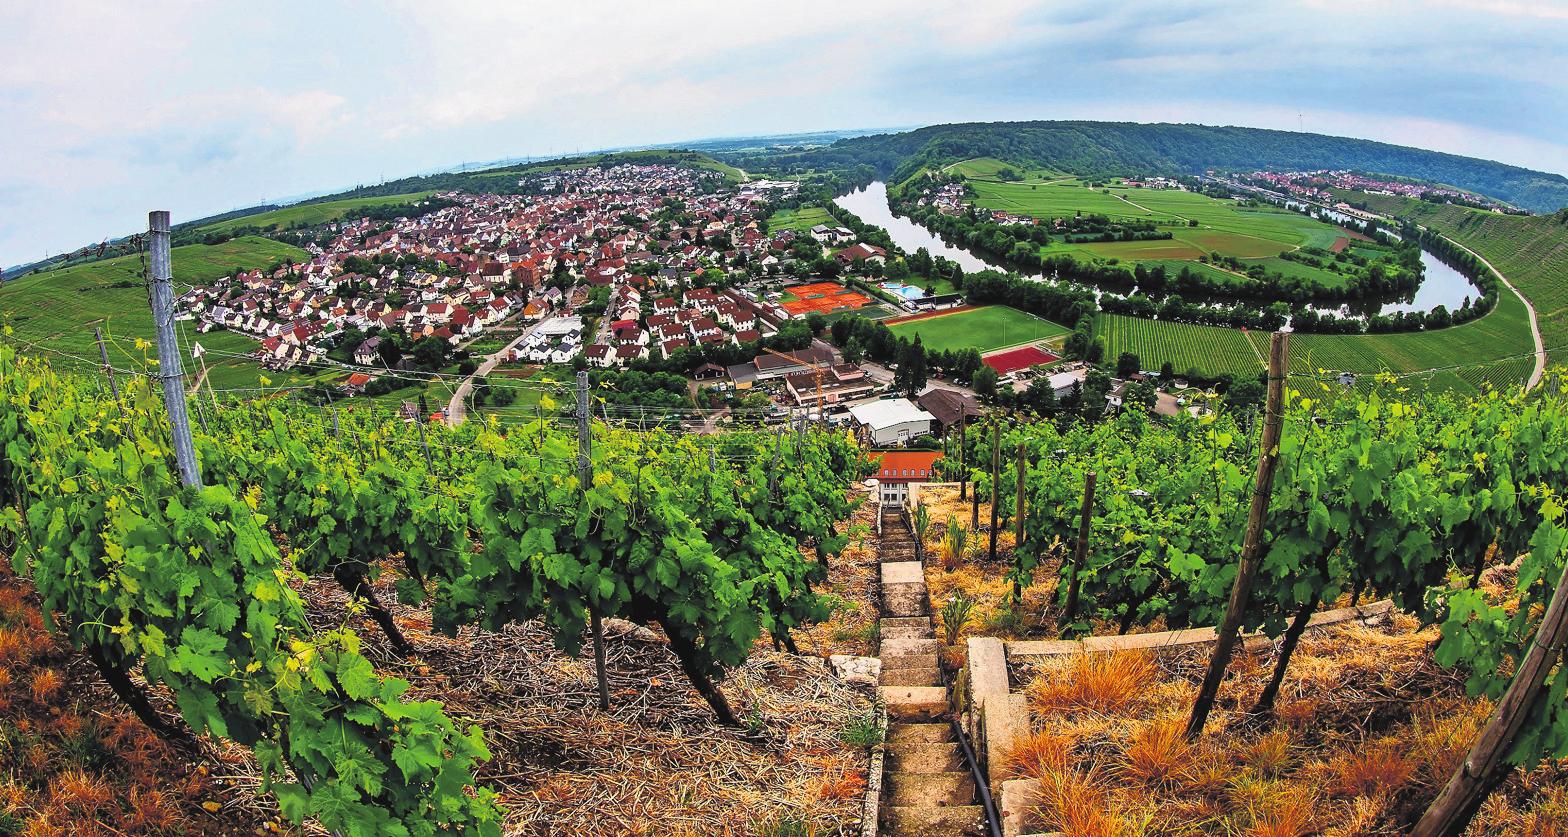 Beim Mundelsheimer Weindorf gibt es Weine aus den schönsten Lagen der Region. Foto: Karsten Schmalz